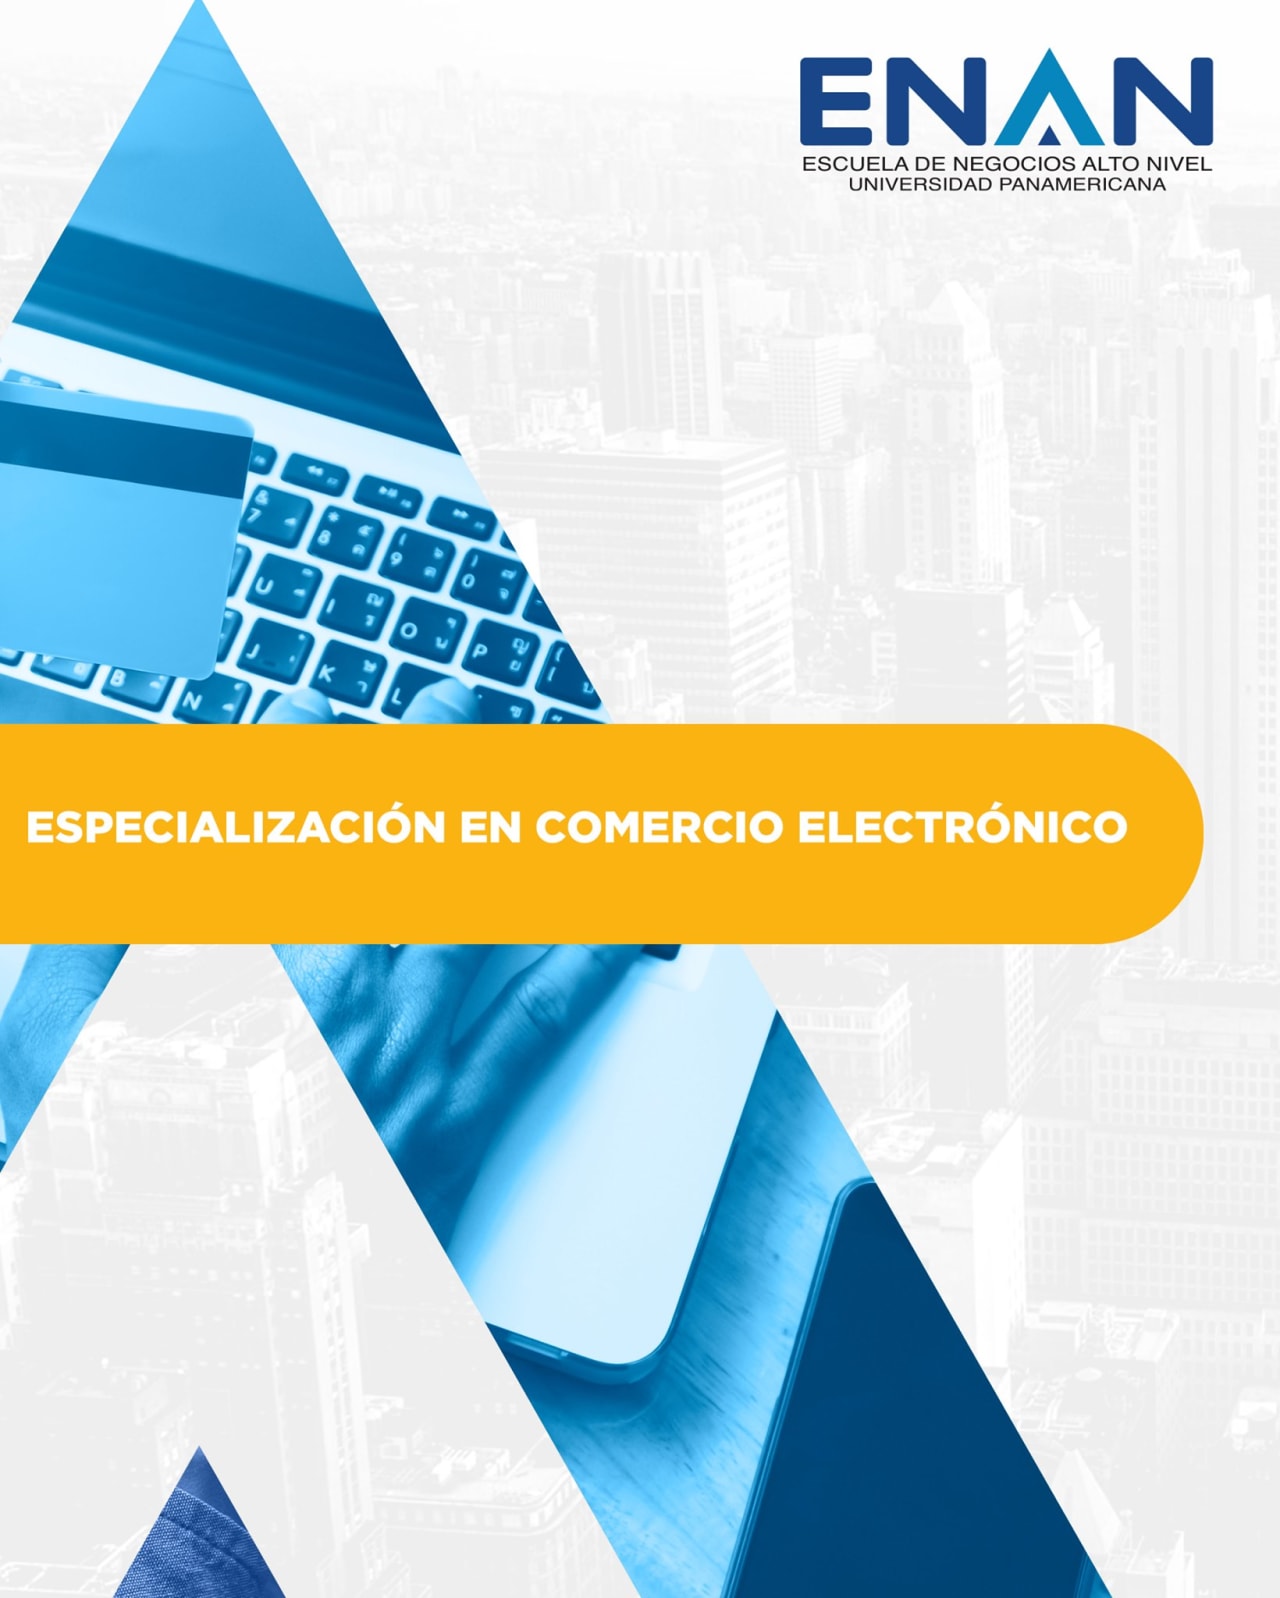 Escuela de Negocios Alto Nivel - Universidad Panamericana de Guatemala Especialización en Comercio Electrónico